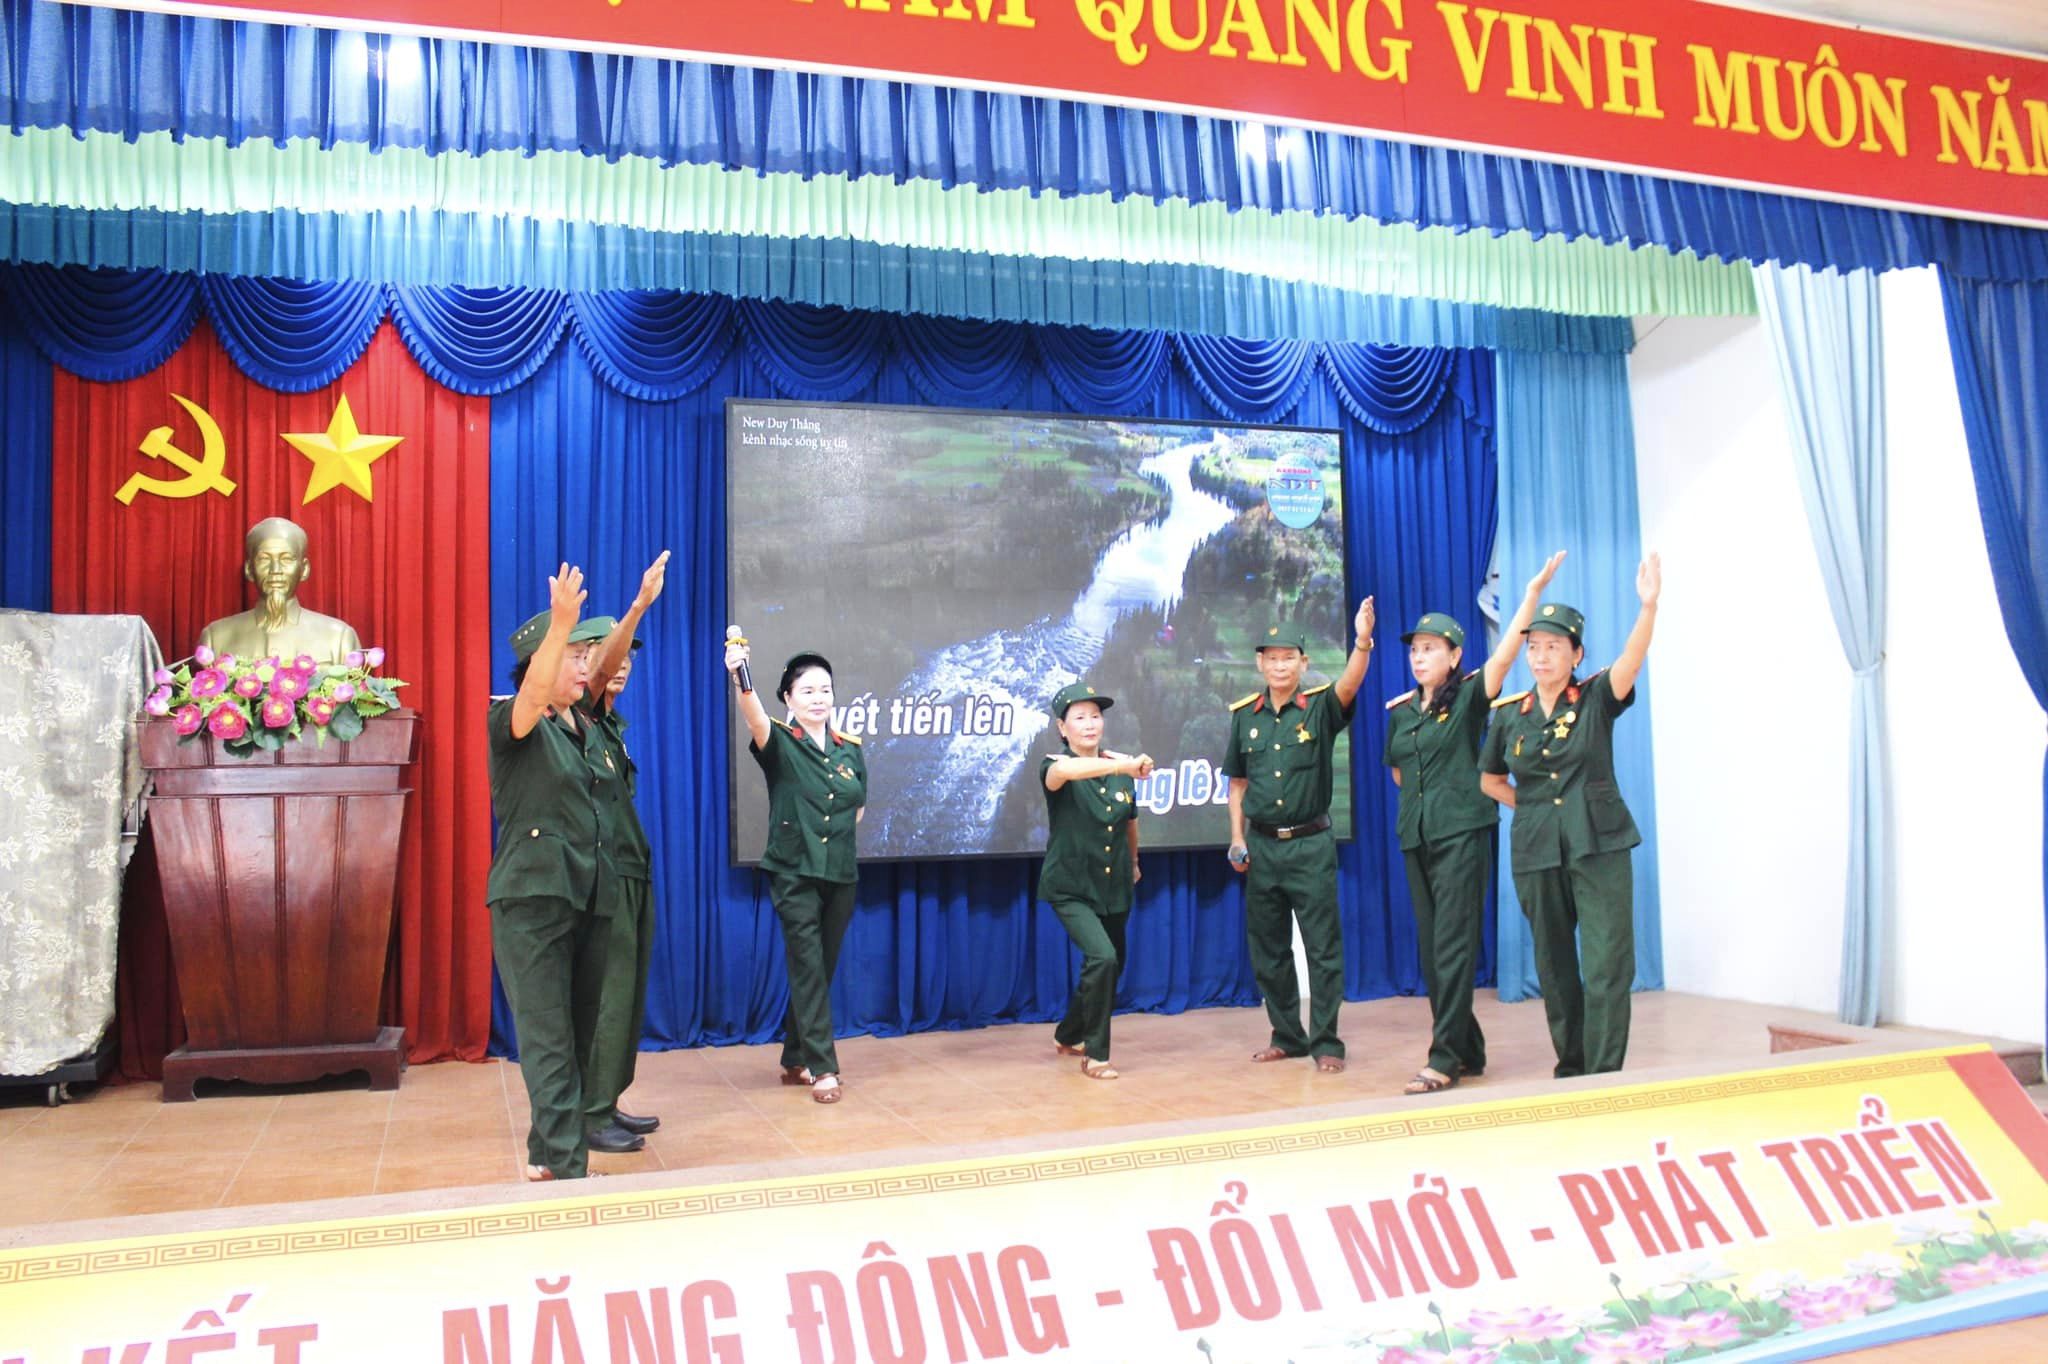 Hội Cựu chiến binh xã Hưng Hòa ôn lại truyền thống kỷ niệm 48 năm Ngày giải phóng miền nam, thống nhất đất nước 30/4/1975 - 30/4/2023.